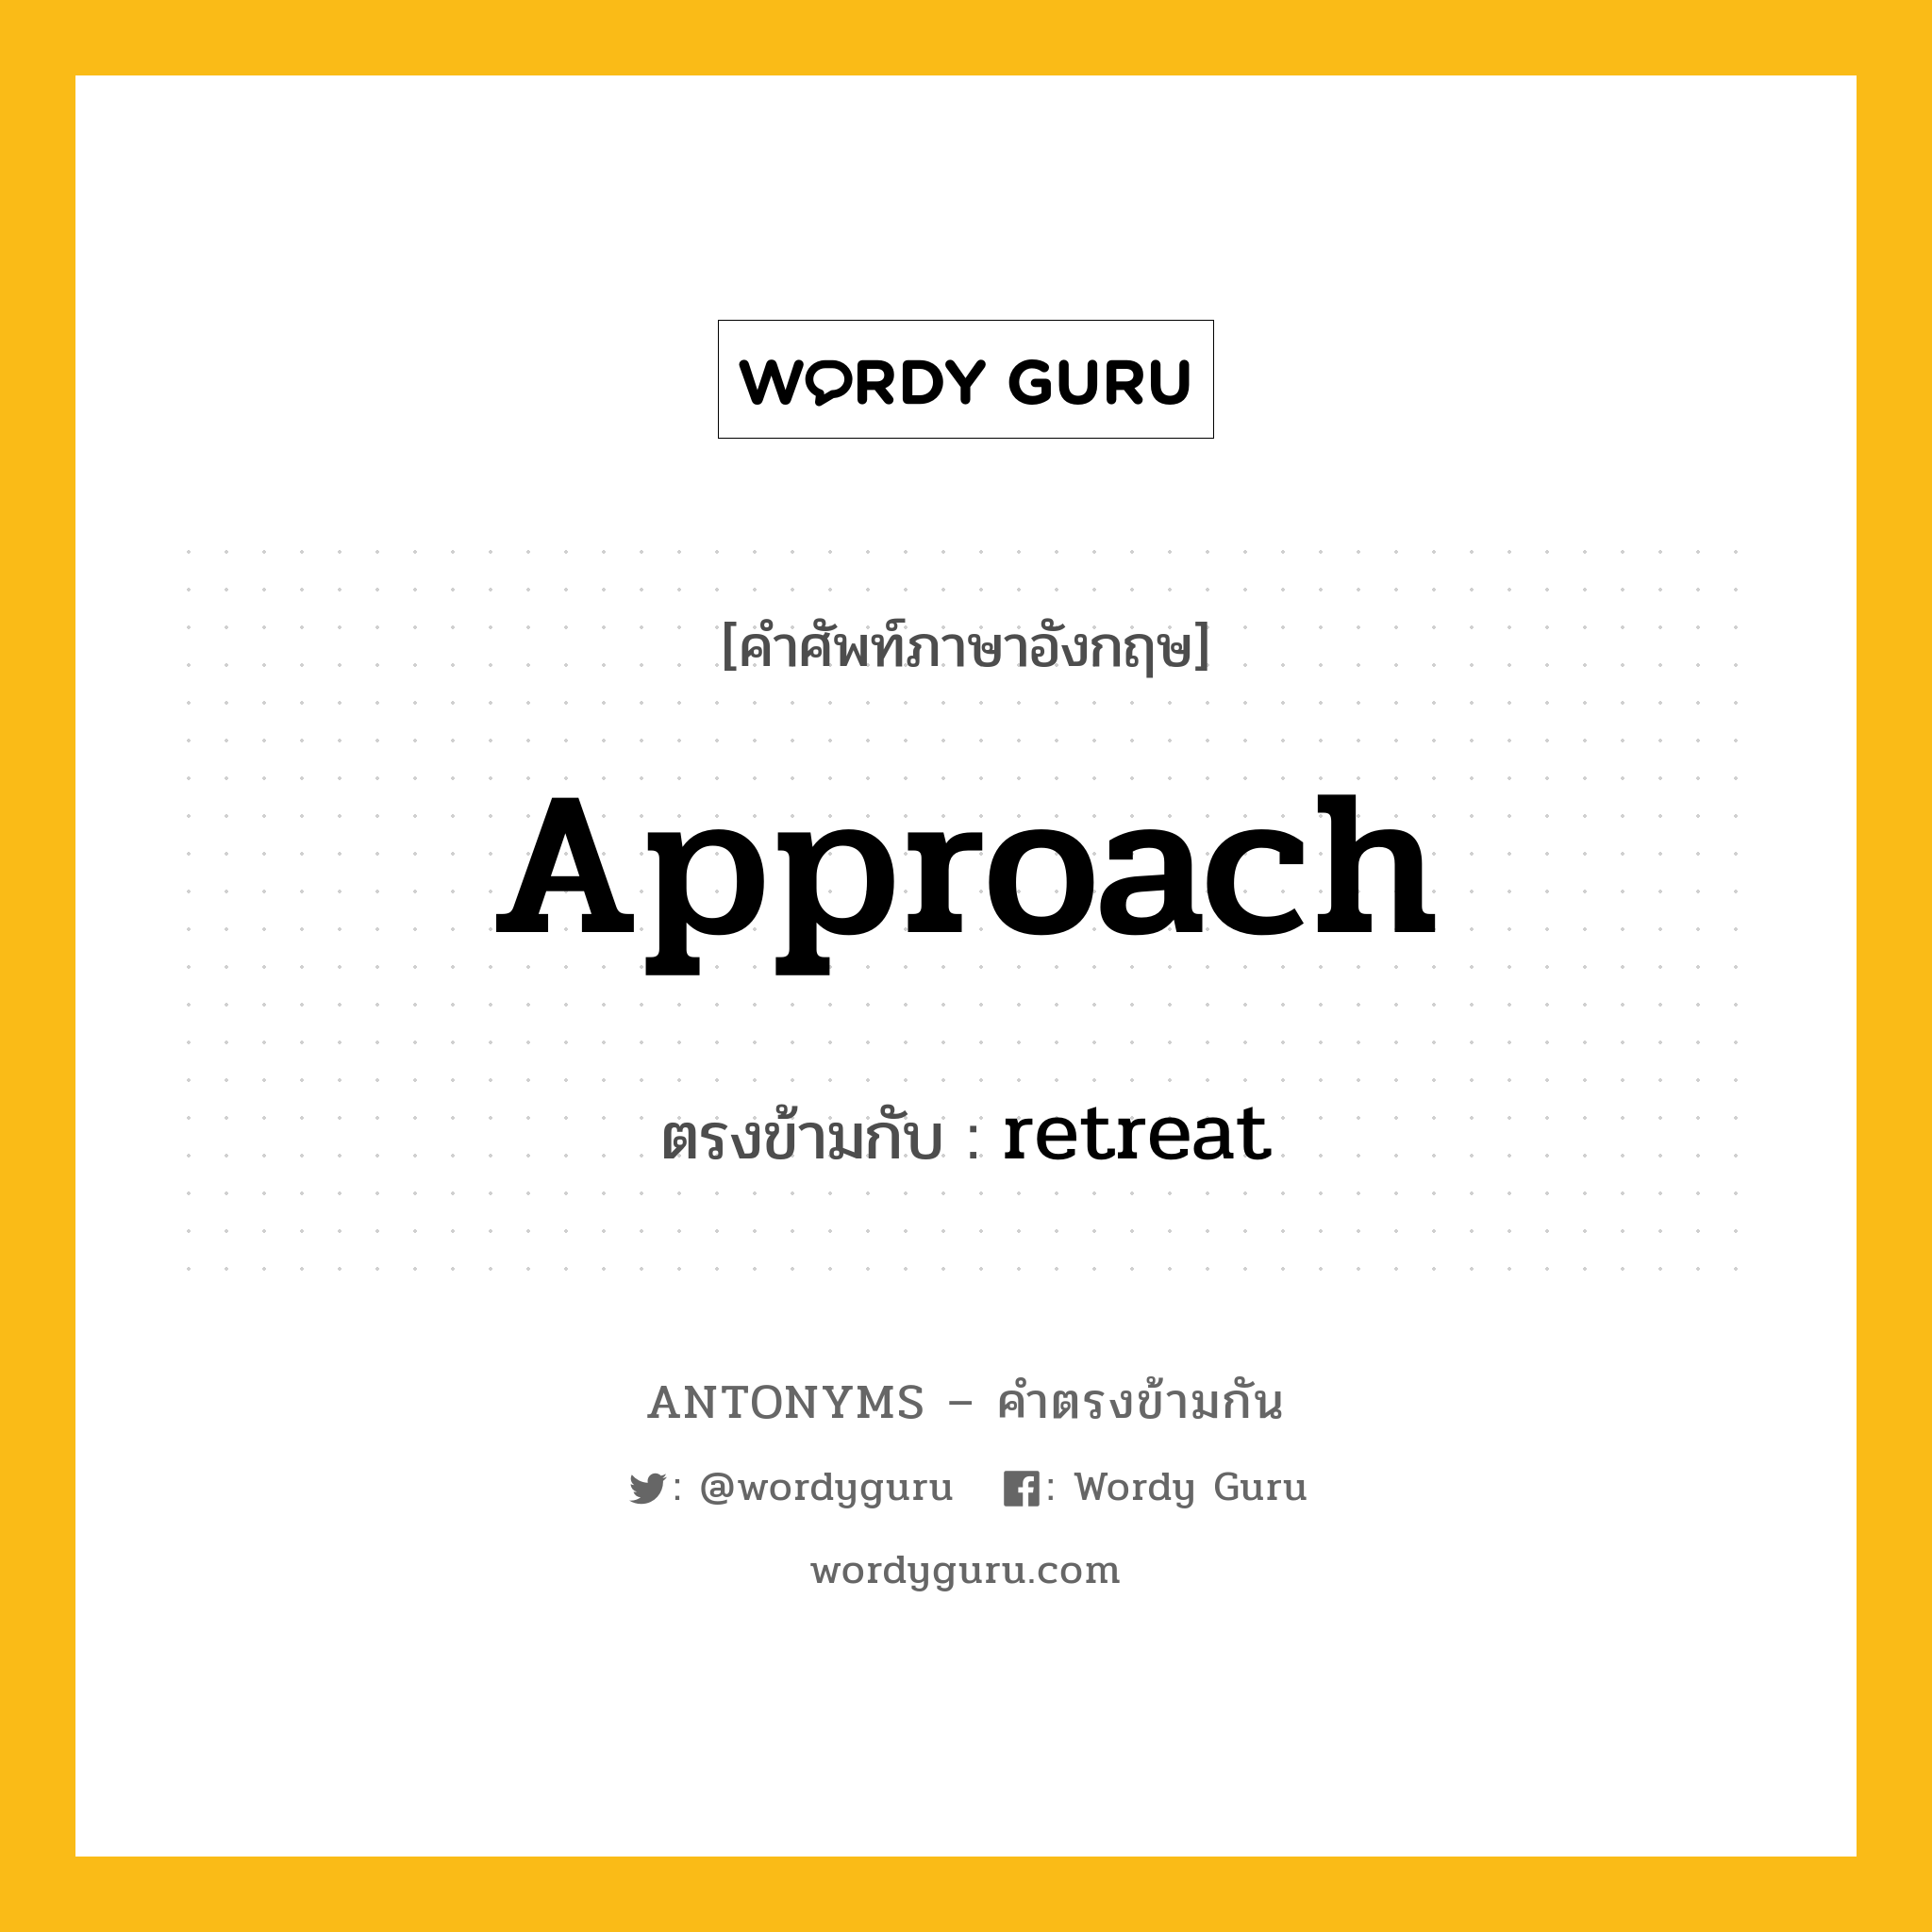 approach เป็นคำตรงข้ามกับคำไหนบ้าง?, คำศัพท์ภาษาอังกฤษ approach ตรงข้ามกับ retreat หมวด retreat